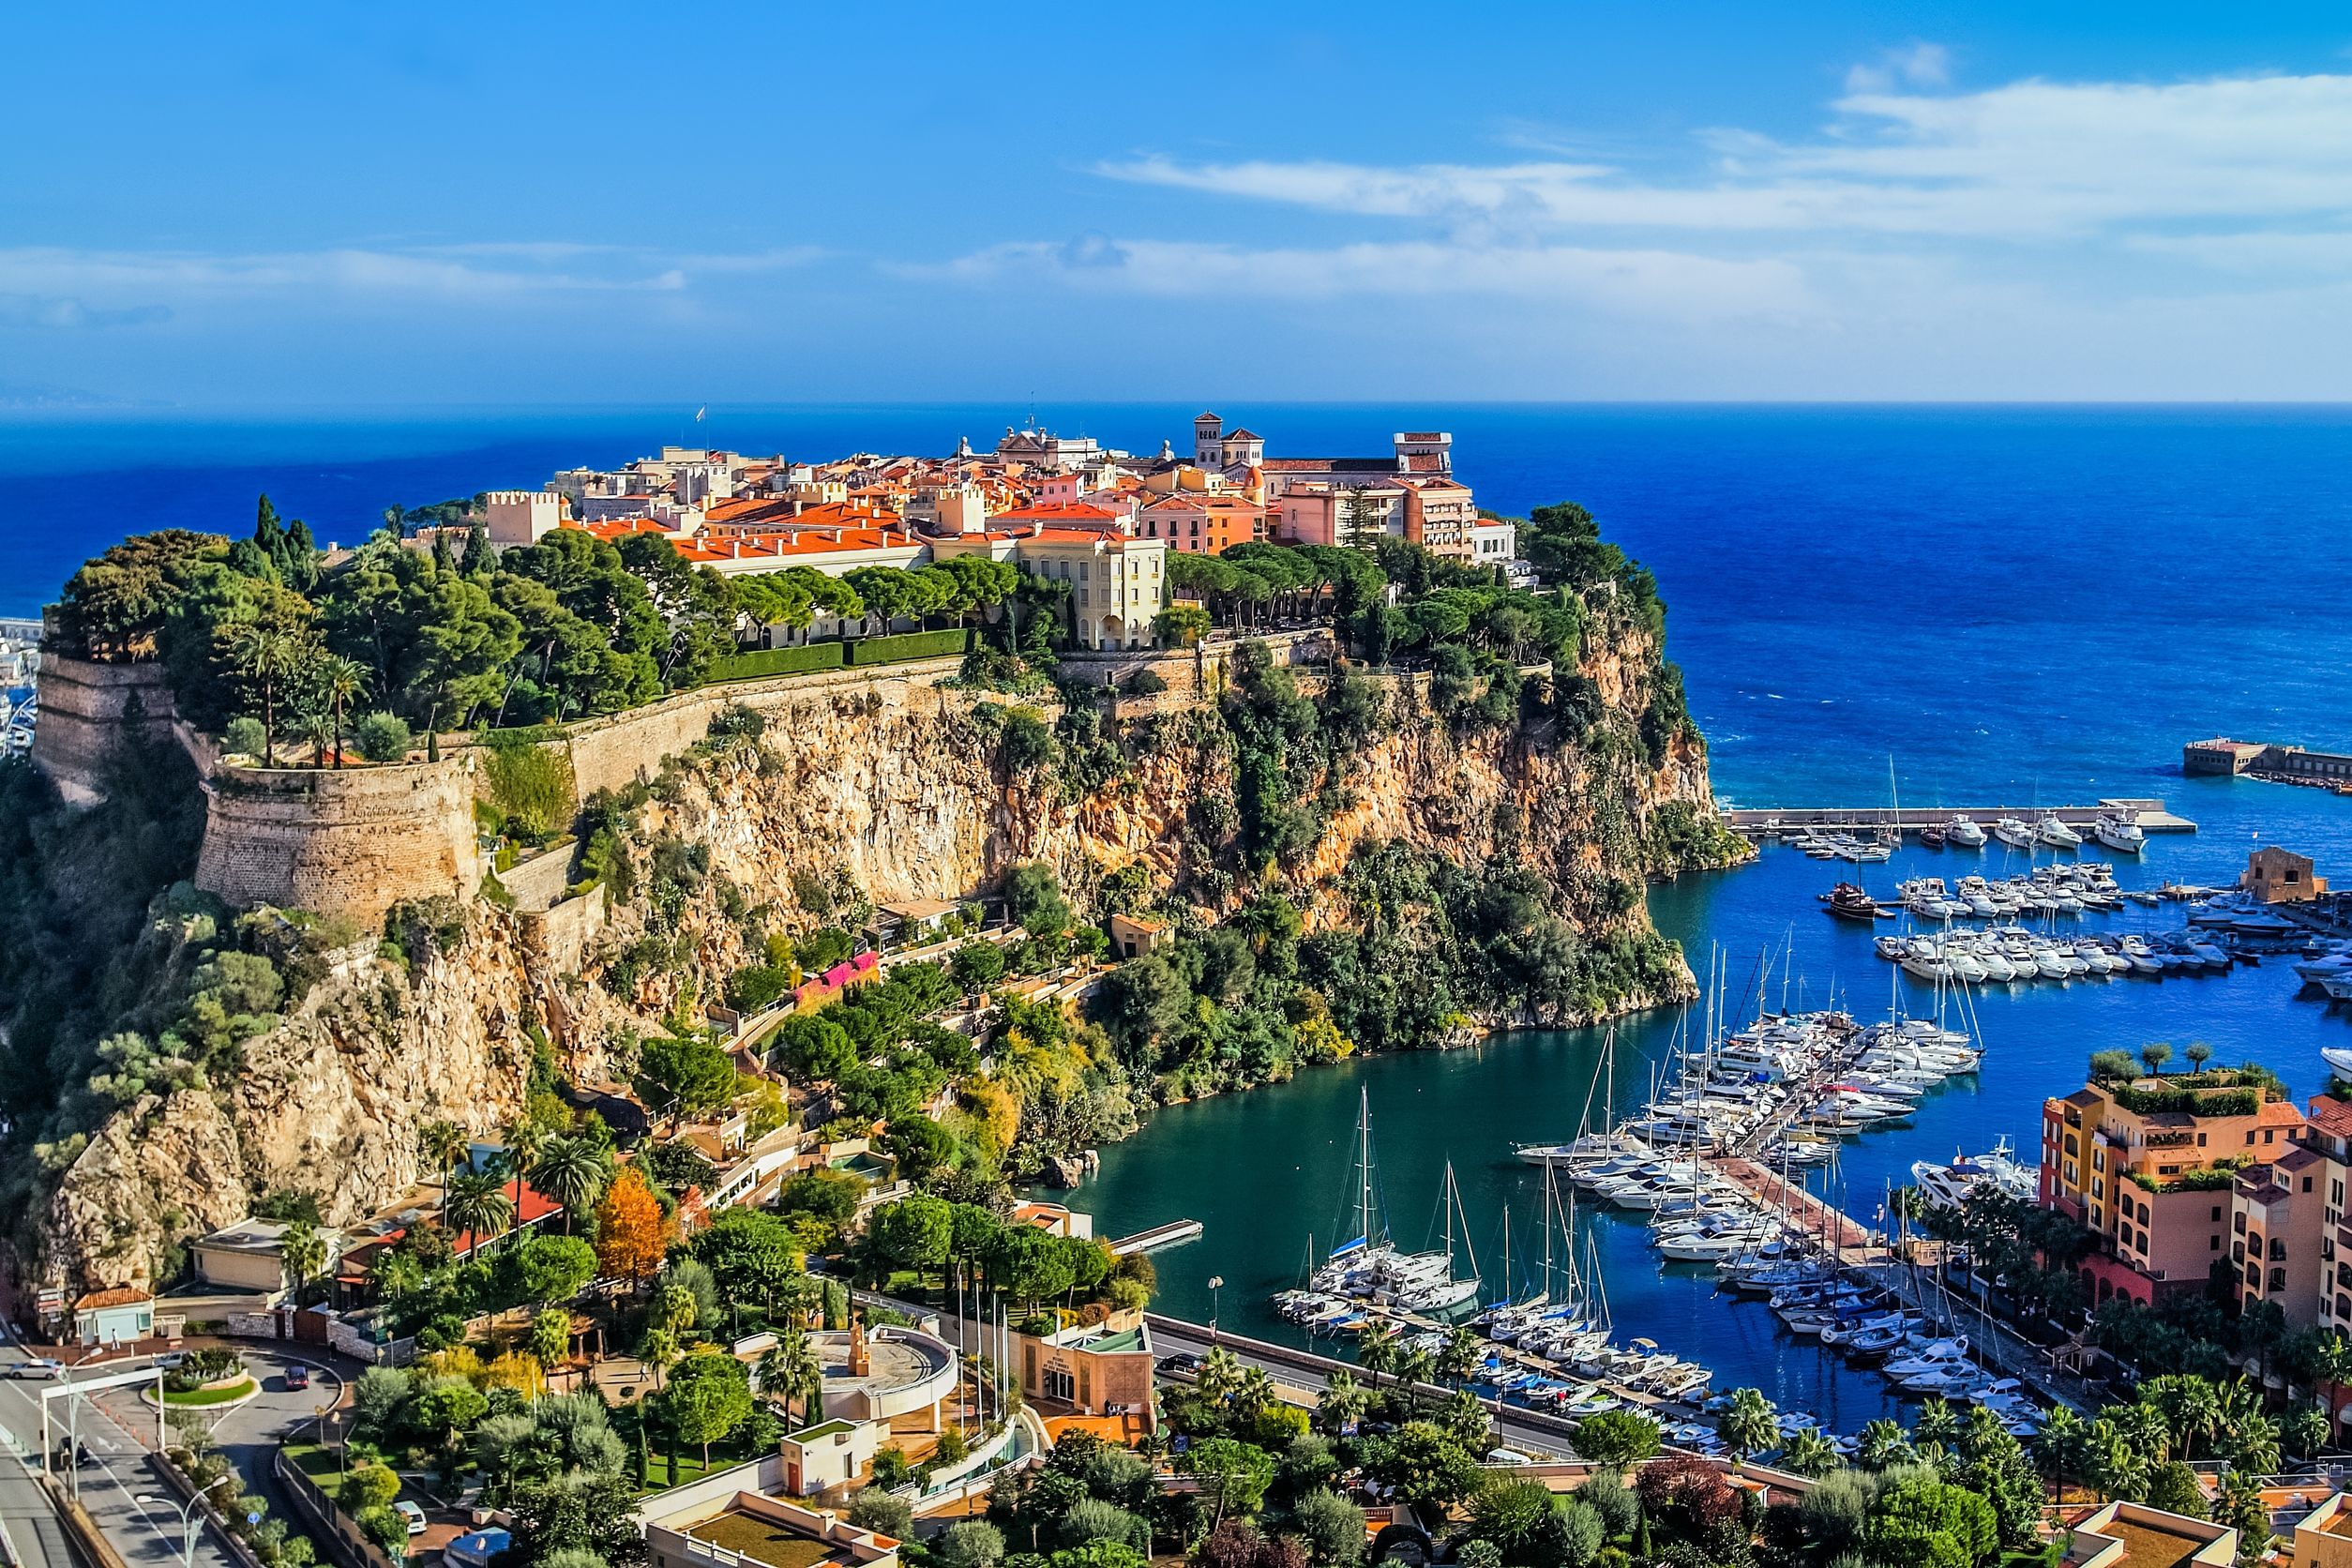 Monaco 100 mooiste plekken; tips wat te doen van bezienswaardigheden, activiteiten en uitjes zoals museum, haven en monumentale gebouwen - Mamaliefde.nl